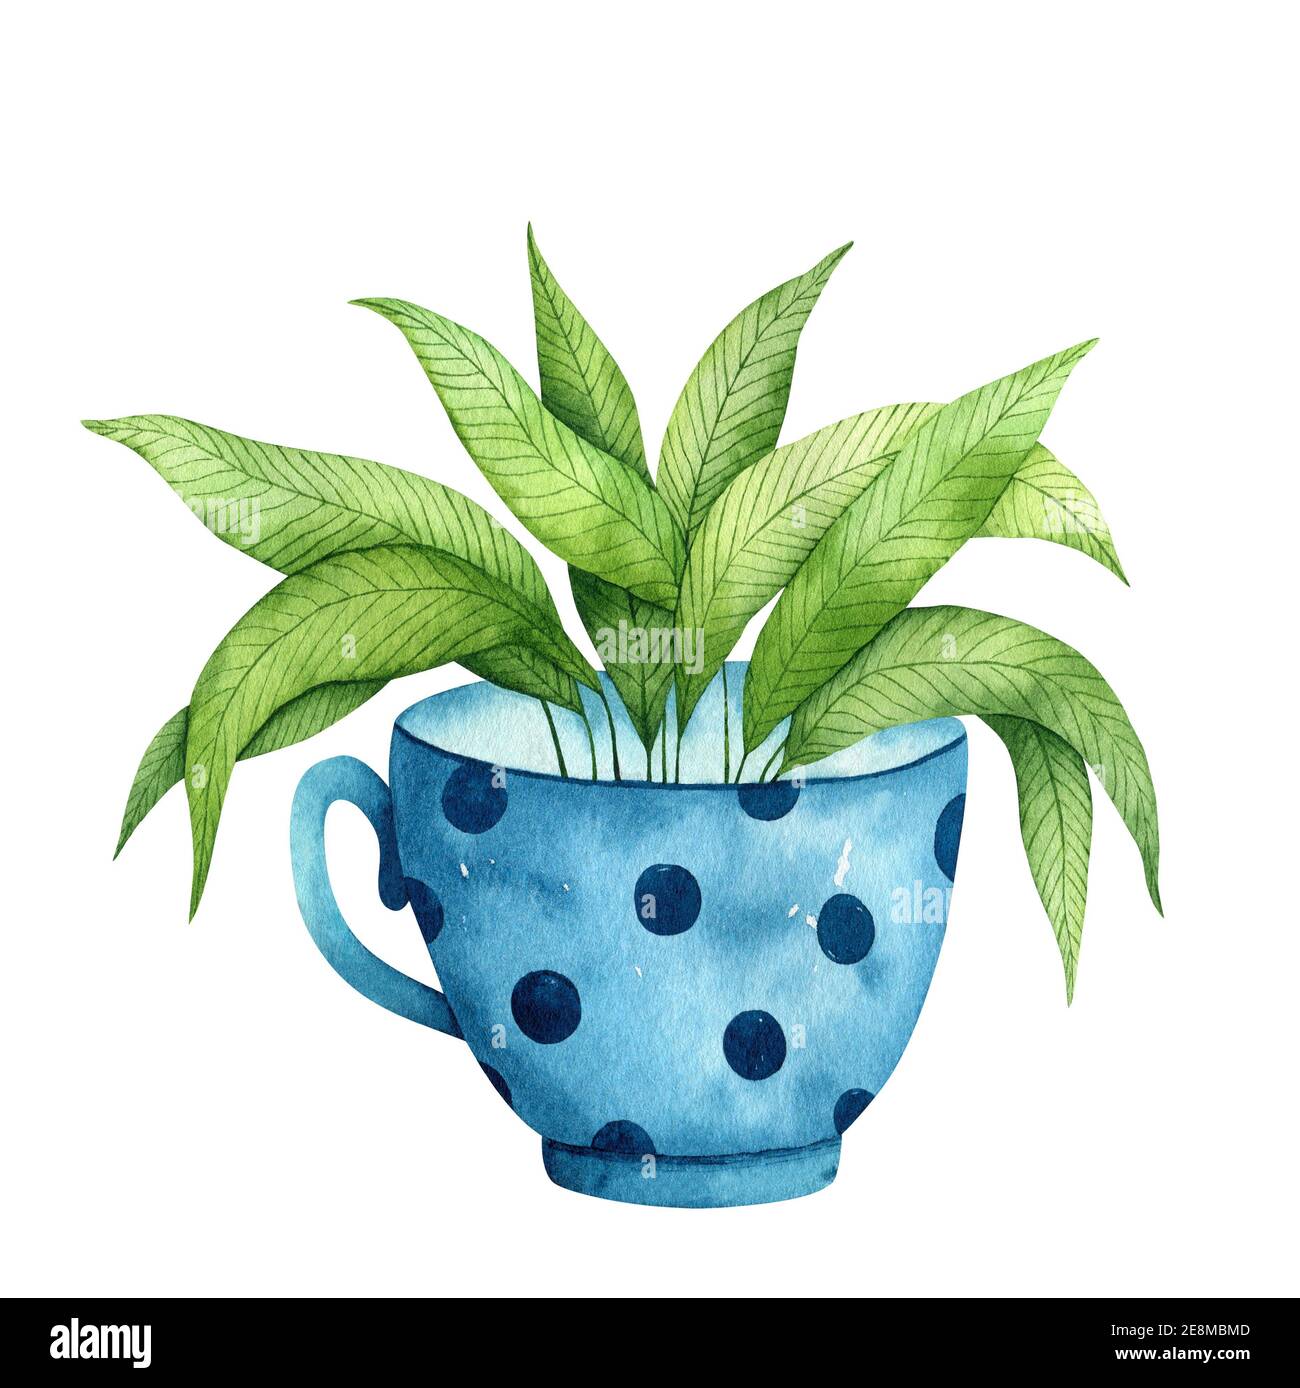 Joli mug bleu avec une plante verte à l'intérieur isolée sur fond blanc. Illustration aquarelle dessinée à la main. Parfait pour l'impression, les cartes, la décoration, les couvertures. Banque D'Images